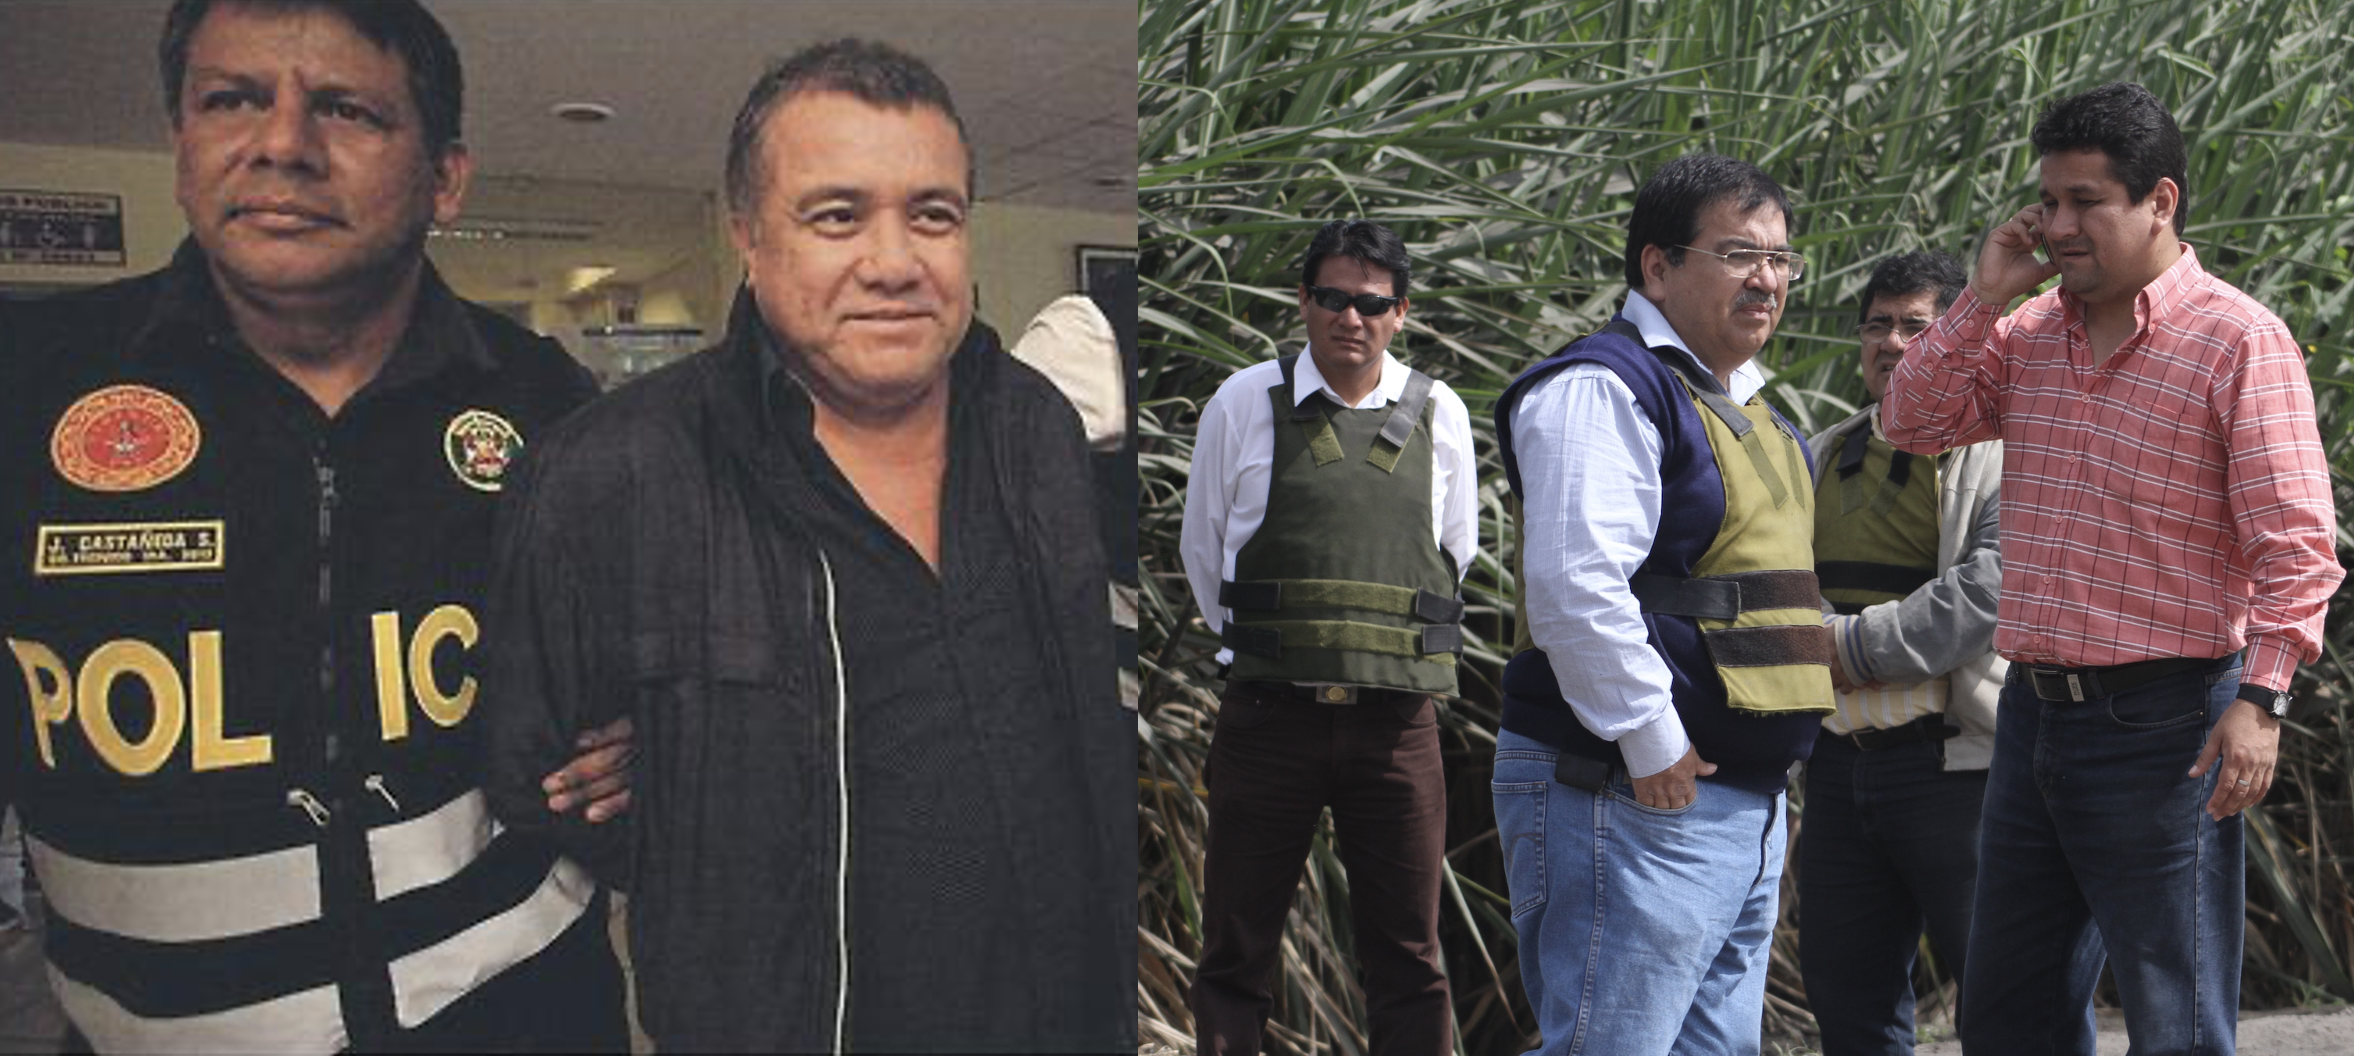 Edmundo Galvez Rodríguez allegado de Carlos Roncal Miñano busca controlar Agropucalá